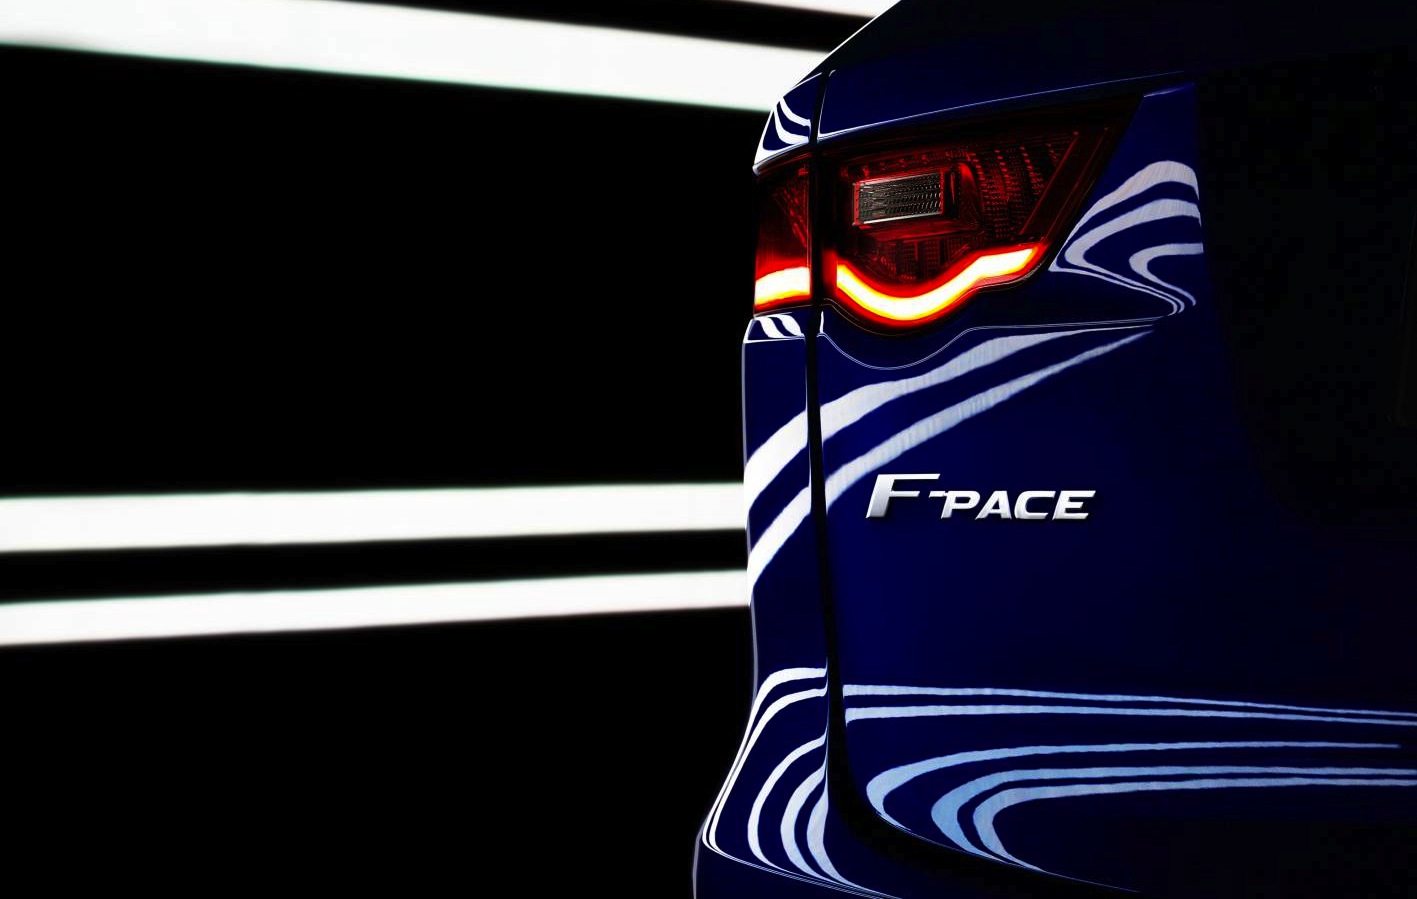 Jaguar F-PACE confirmed as production C-X17 SUV